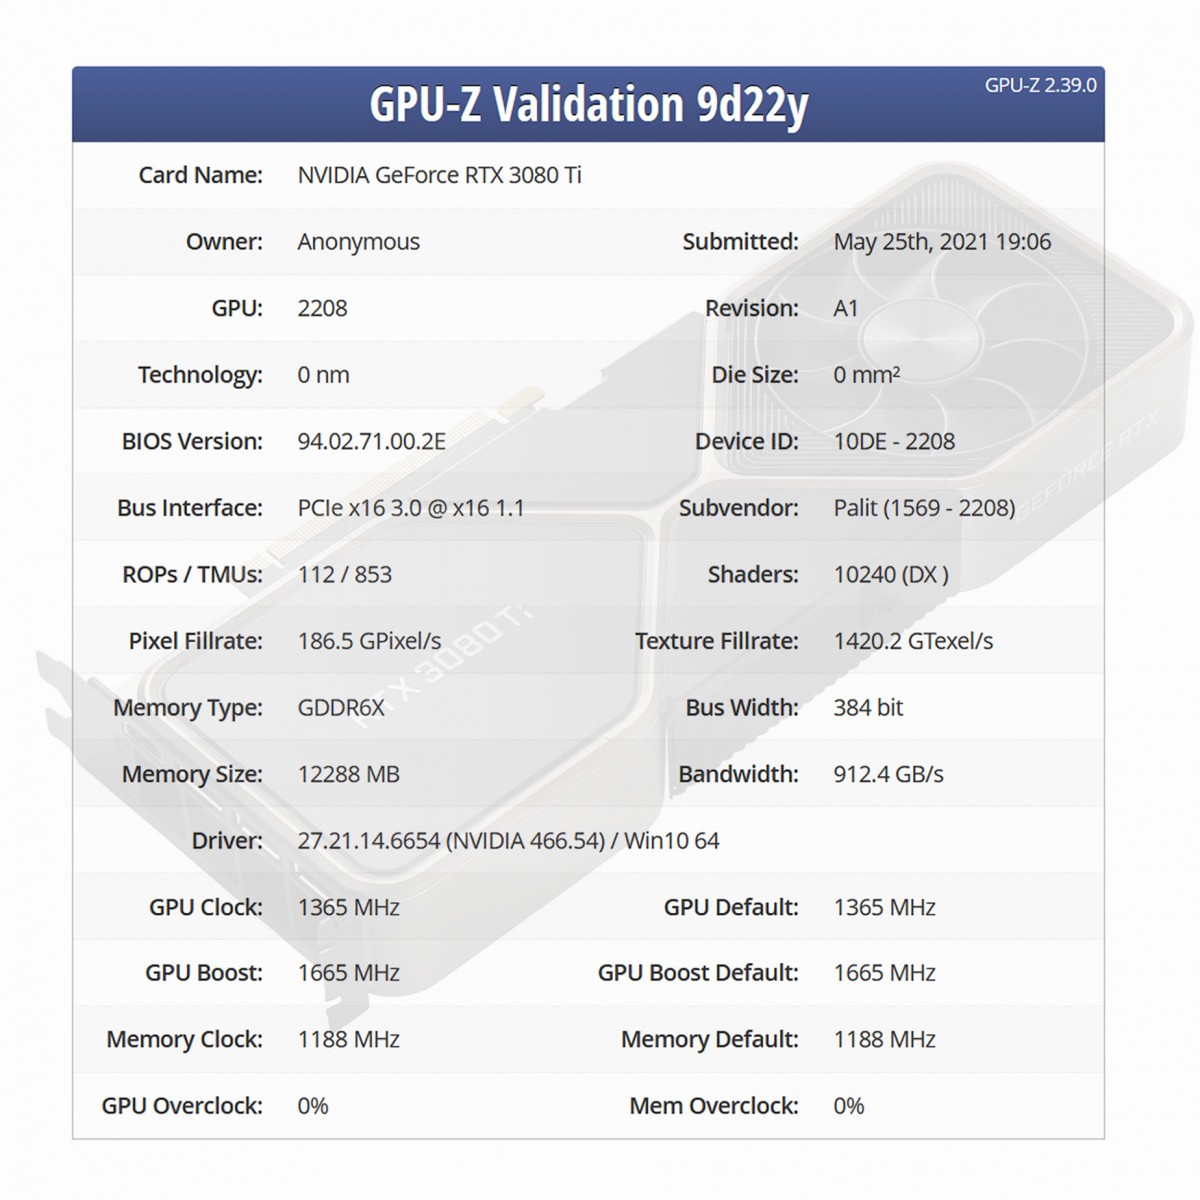 Voilà les spécifications techniques complètes de la GeForce RTX 3080 Ti de NVIDIA